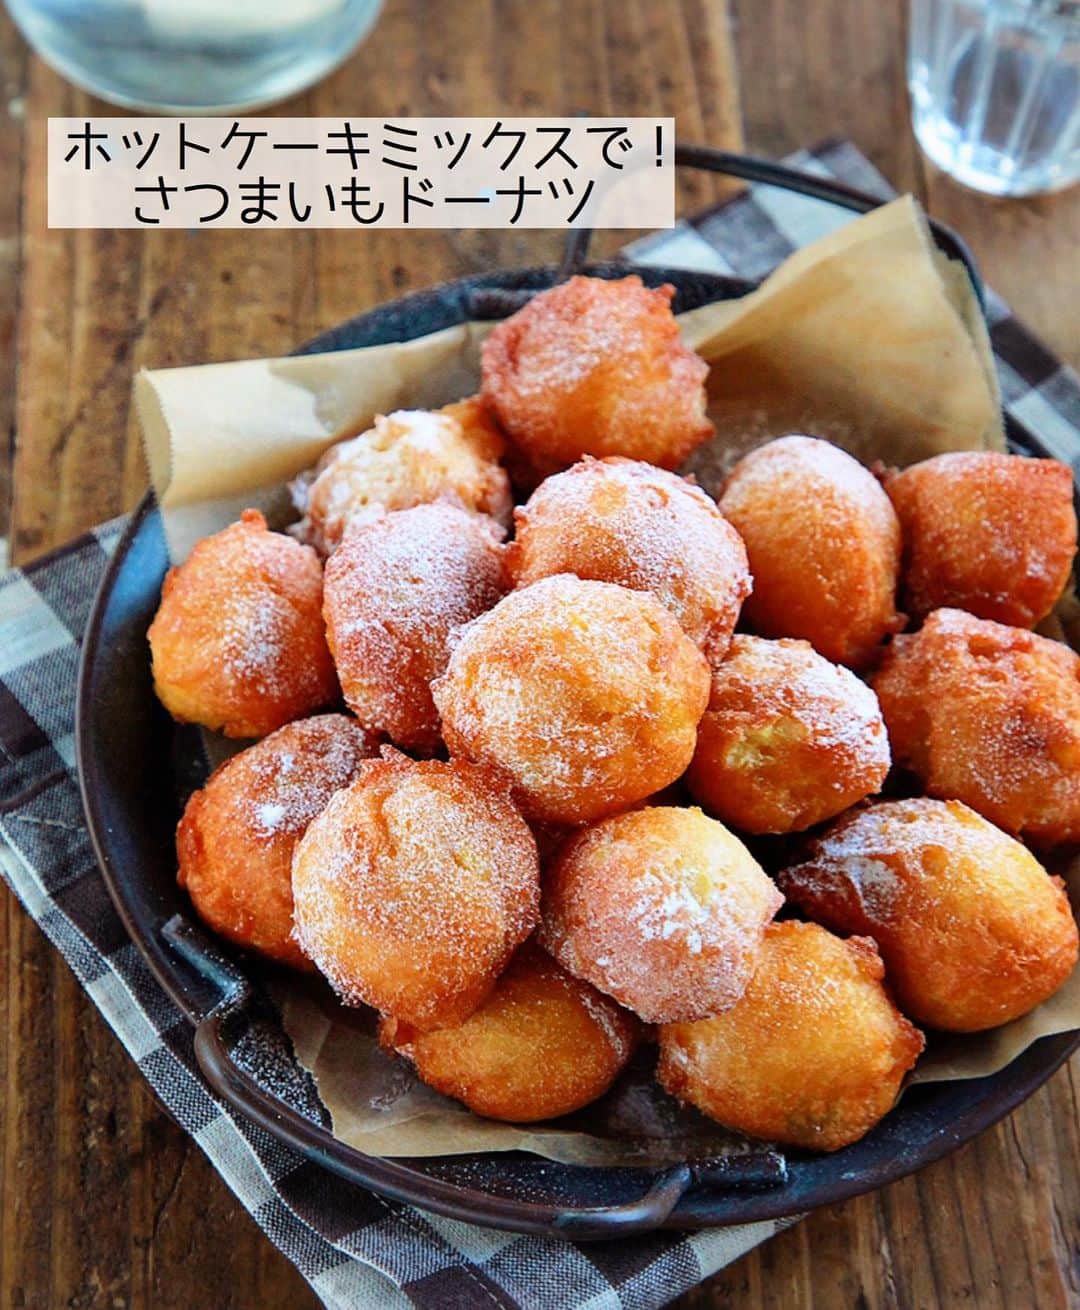 Mizuki【料理ブロガー・簡単レシピ】さんのインスタグラム写真 - (Mizuki【料理ブロガー・簡単レシピ】Instagram)「・﻿ 【#レシピ 】ーーーーーーー﻿ ホットケーキミックスで！﻿ ♡さつまいもドーナツ♡﻿ ーーーーーーーーーーーーー﻿ ﻿ ﻿ ﻿ おはようございます(*^^*)﻿ ﻿ 今日ご紹介させていただくのは﻿ ホットケーキミックスで作る﻿ \\さつまいもドーナツ//﻿ (🍠続きですみません😅)﻿ ほっこりと優しい甘さで﻿ 秋にぴったりのおやつですよ〜♩﻿ ﻿ 作り方は超簡単(*´艸`)﻿ 潰して混ぜて揚げるだけ♡﻿ 材料も油も少しでできるので﻿ お気軽にお試し下さいね♩﻿ ﻿ ﻿ ﻿ ＿＿＿＿＿＿＿＿＿＿＿＿＿＿＿＿＿＿＿＿﻿ 【作りやすい量】﻿ ホットケーキミックス...150g﻿ さつまいも...1本(200g)﻿ 卵...1個﻿ 牛乳...80ml﻿ サラダ油・粉糖...各適量﻿ ﻿ 1.さつまいもは皮を剥いて3cm大に切り、水に3分晒して水気を切る。耐熱ボウルに入れてふんわりラップし、600Wのレンジで6分加熱して熱い内に潰す。﻿ 2.卵、牛乳の順に加えて手早く混ぜ、最後にホットケーキミックスを加えてゴムベラで混ぜる。﻿ 3.フライパンに1cmのサラダ油を入れて160度に熱し、生地をスプーンで3cm大にすくって落とし入れる。転がしながら4〜5分揚げ、油を切って粉糖をかける。﻿ ￣￣￣￣￣￣￣￣￣￣￣￣￣￣￣￣￣￣￣￣﻿ ﻿ ﻿ ﻿ 《ポイント》﻿ ♦︎卵を加えたら火が入らないように手早く混ぜて下さい♩﻿ ♦︎ドーナツは焦げやすいので低温の油で揚げます♩﻿ ♦︎今回は粉糖(ノンウェット)をかけましたが、［グラニュー糖］や［きな粉×砂糖］も合います♩﻿ ﻿ ﻿ ﻿ ﻿ ﻿ ﻿ _____________________________________﻿ 💓新刊予約開始しました💓﻿ Amazon予約キャンペーン実施中🎁﻿ ￣￣￣￣￣￣￣￣￣￣￣￣￣￣￣￣￣﻿ \15分でいただきます/﻿ #Mizukiの2品献立﻿ (9月24日発売・マガジンハウス)﻿ ﻿ 忙しい私たちには﻿ 2品くらいがちょうどいい！﻿ 『しんどくない献立、考えました』﻿ ￣￣￣￣￣￣￣￣￣￣￣￣￣￣￣￣﻿ ﻿ メインはフライパン﻿ 副菜はレンジ(又は和えるだけ)の2品献立💕﻿ メインを作っている合間にできる﻿ レンチン副菜を組み合わせることで﻿ 15分で2品が同時に完成します！﻿ (別腹デザートも掲載😂)﻿ ﻿ ﻿ ーーーーーPART.1 ーーーーー﻿ 【Mizukiのお墨つき！２品献立ベスト10】﻿ 約15分でできる10献立をご紹介！﻿ メインは全部フライパン、副菜はレンチンor混ぜるだけ♡﻿ ﻿ ーーーーーPART.2 ーーーーー﻿ 【フライパンひとつ！今夜のメインおかず】﻿ 献立の主役になる肉や魚のおかず50品！﻿ Part3の副菜と組み合わせれば﻿ 献立のバリエーションが広がりますよ♩﻿ ﻿ ーーーーー PART.3 ーーーーー﻿ 【合間に作れる！ 野菜別かんたん副菜】﻿ レンチンor和えるだけの副菜レシピを﻿ 素材別にたっぷり収録♩﻿ ﻿ ーーーーー番外編ーーーーー﻿ 【ひとつで満足！ご飯＆麺】﻿ 【具だくさん！おかずスープ】﻿ 【オーブンいらずのおやつレシピ】﻿ ￣￣￣￣￣￣￣￣￣￣￣￣￣￣￣￣￣￣﻿ ﻿ ﻿ 🎁🎁🎁🎁🎁🎁🎁🎁🎁🎁🎁🎁﻿ Amazon予約プレゼントキャンペーン﻿ 🎁🎁🎁🎁🎁🎁🎁🎁🎁🎁🎁🎁﻿ ﻿ 皆様に感謝の気持ちを込めて﻿ ご用意させていただきました✨﻿ ﻿ ＿＿＿＿＿＿＿＿＿＿＿＿＿＿＿＿＿﻿ 新刊【2品献立】をAmazonで予約し﻿ インスタにアップして下さった方に﻿ 抽選で［フライパン］or［ボールセット］を﻿ プレゼントさせていただきます♩﻿ ￣￣￣￣￣￣￣￣￣￣￣￣￣￣￣￣￣﻿ ﻿ ✅【インスタ応募方法▼】﻿ ①本の表紙の画像を1枚目に、﻿ Amazonで予約したことがわかる画像を﻿ 2枚目に貼り付け(どちらもスクショでOK)﻿ ［#Mizukiの2品献立 ］のハッシュタグを付けて投稿！﻿ 以上で応募完了です(*^^*)﻿ ﻿ ￣￣￣￣￣￣￣￣￣￣￣￣￣￣￣￣￣￣﻿ ハイライトにリンク🔗あります💓﻿ ﻿ ﻿ ﻿ ﻿ ﻿ ﻿ ￣￣￣￣￣￣￣￣￣￣￣￣￣￣￣￣￣￣﻿ レシピを作って下さった際や﻿ レシピ本についてのご投稿には﻿ タグ付け( @mizuki_31cafe )して﻿ お知らせいただけると嬉しいです😊💕﻿ ＿＿＿＿＿＿＿＿＿＿＿＿＿＿＿＿＿＿﻿ ﻿ ﻿ ﻿ ﻿ ﻿ #ホットケーキミックス#さつまいも#ドーナツMizuki#簡単レシピ#時短レシピ#節約レシピ#料理#フーディーテーブル#マカロニメイト#おうちごはん#デリスタグラマー#料理好きな人と繋がりたい#食べ物#料理記録#おうちごはんlover#写真好きな人と繋がりたい#foodpic#cooking#recipe#lin_stagrammer#foodporn#yummy#f52grams#さつまいもドーナツm」9月13日 7時15分 - mizuki_31cafe